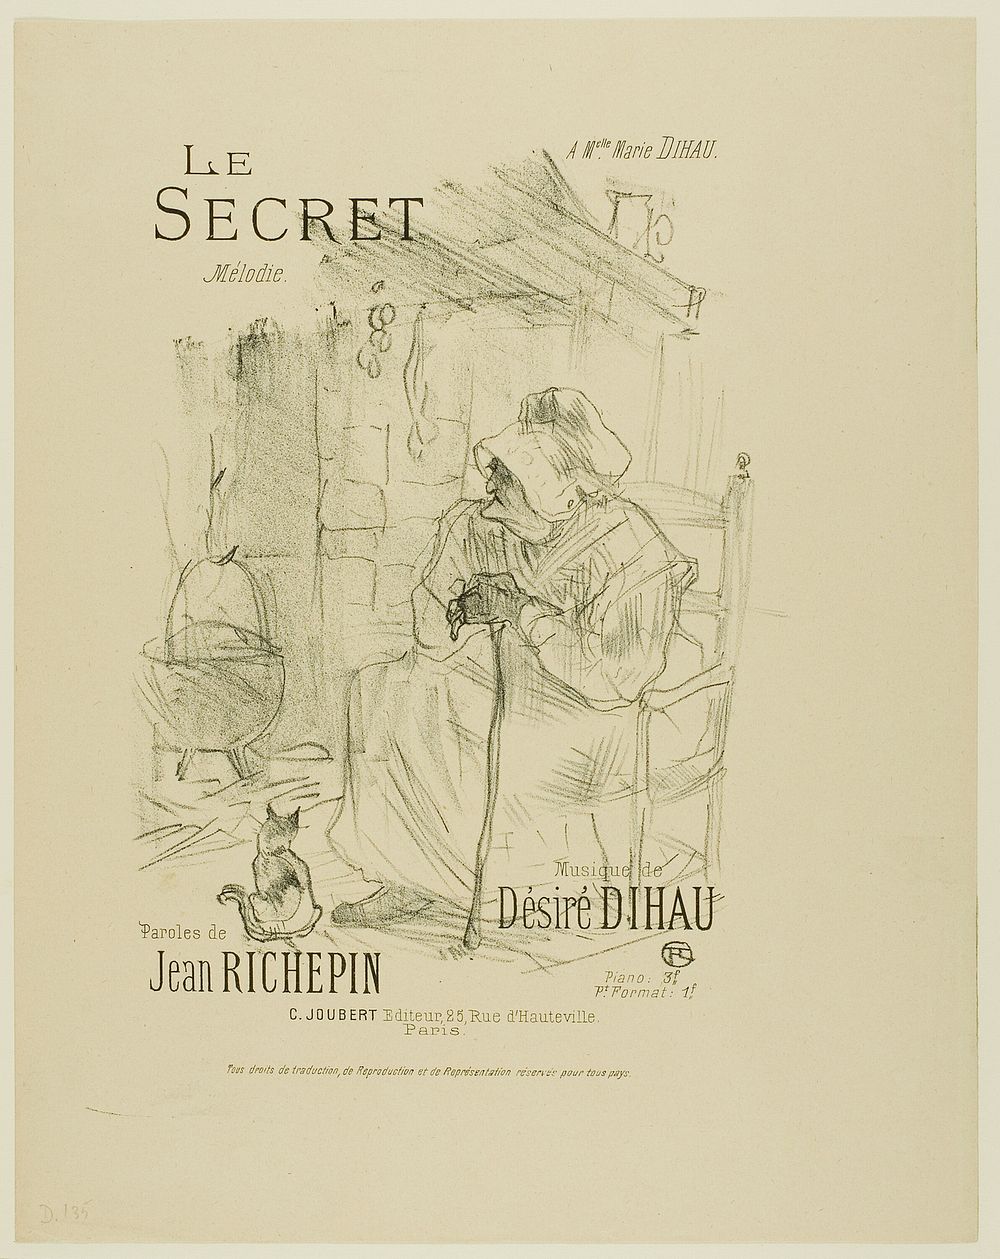 The Secret, from Mélodies de Désiré Dihau by Henri de Toulouse-Lautrec